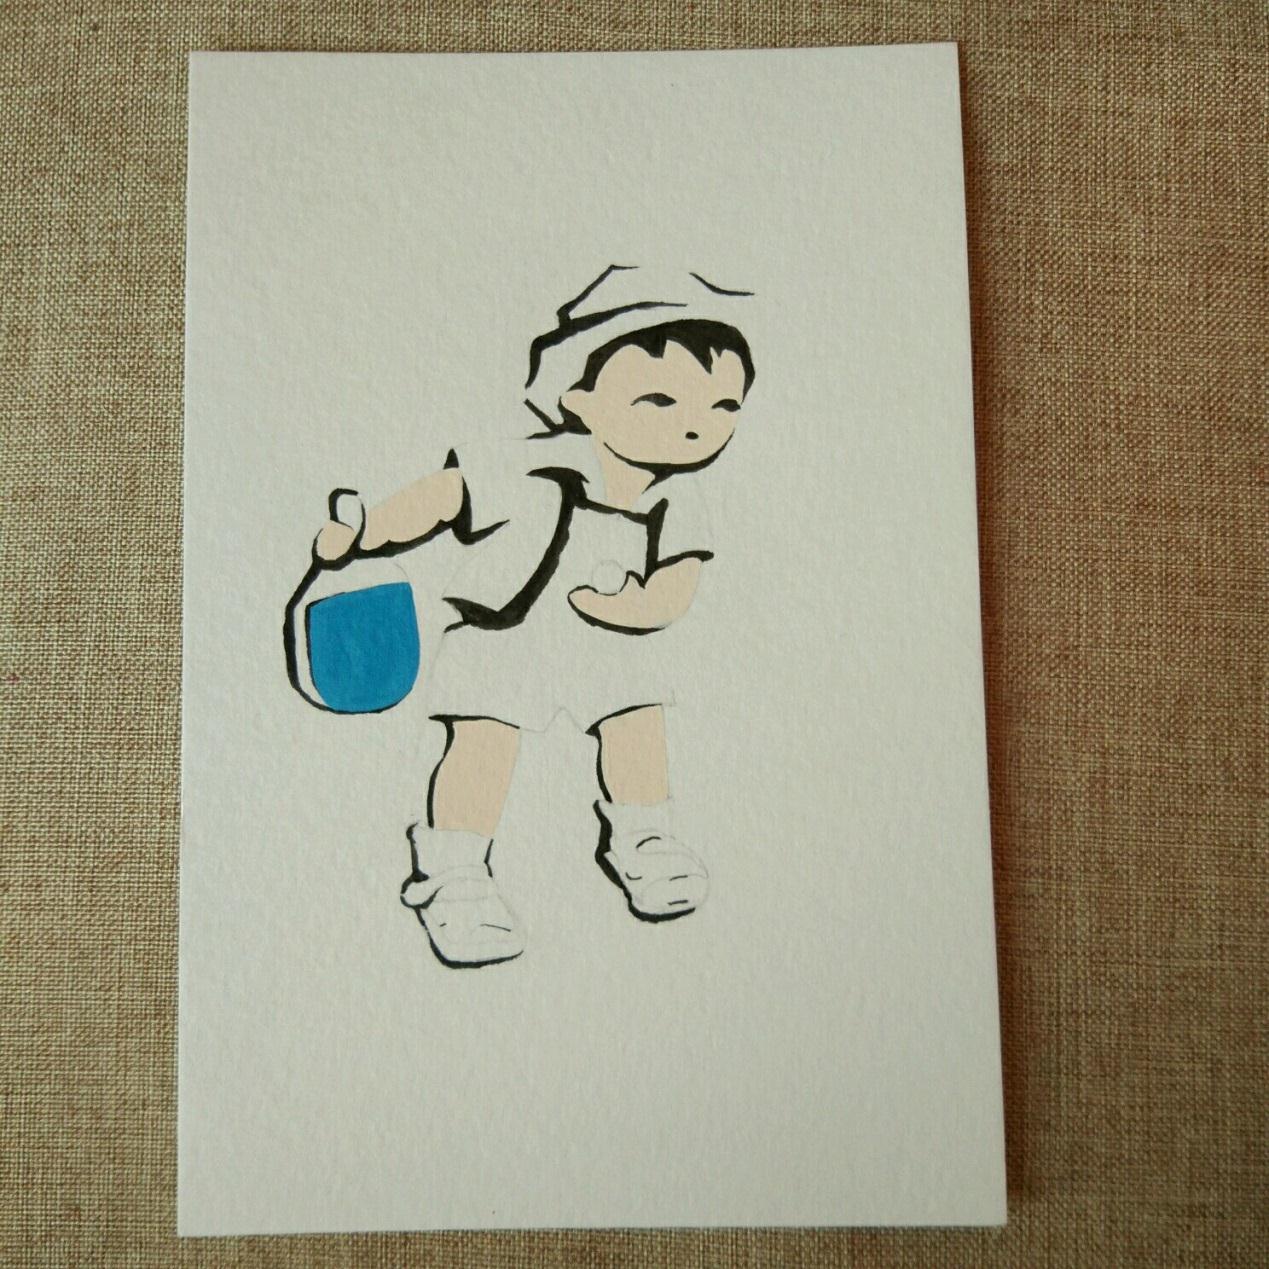 宋宋优秀的手绘作品童趣系列之打乒乓的小男孩